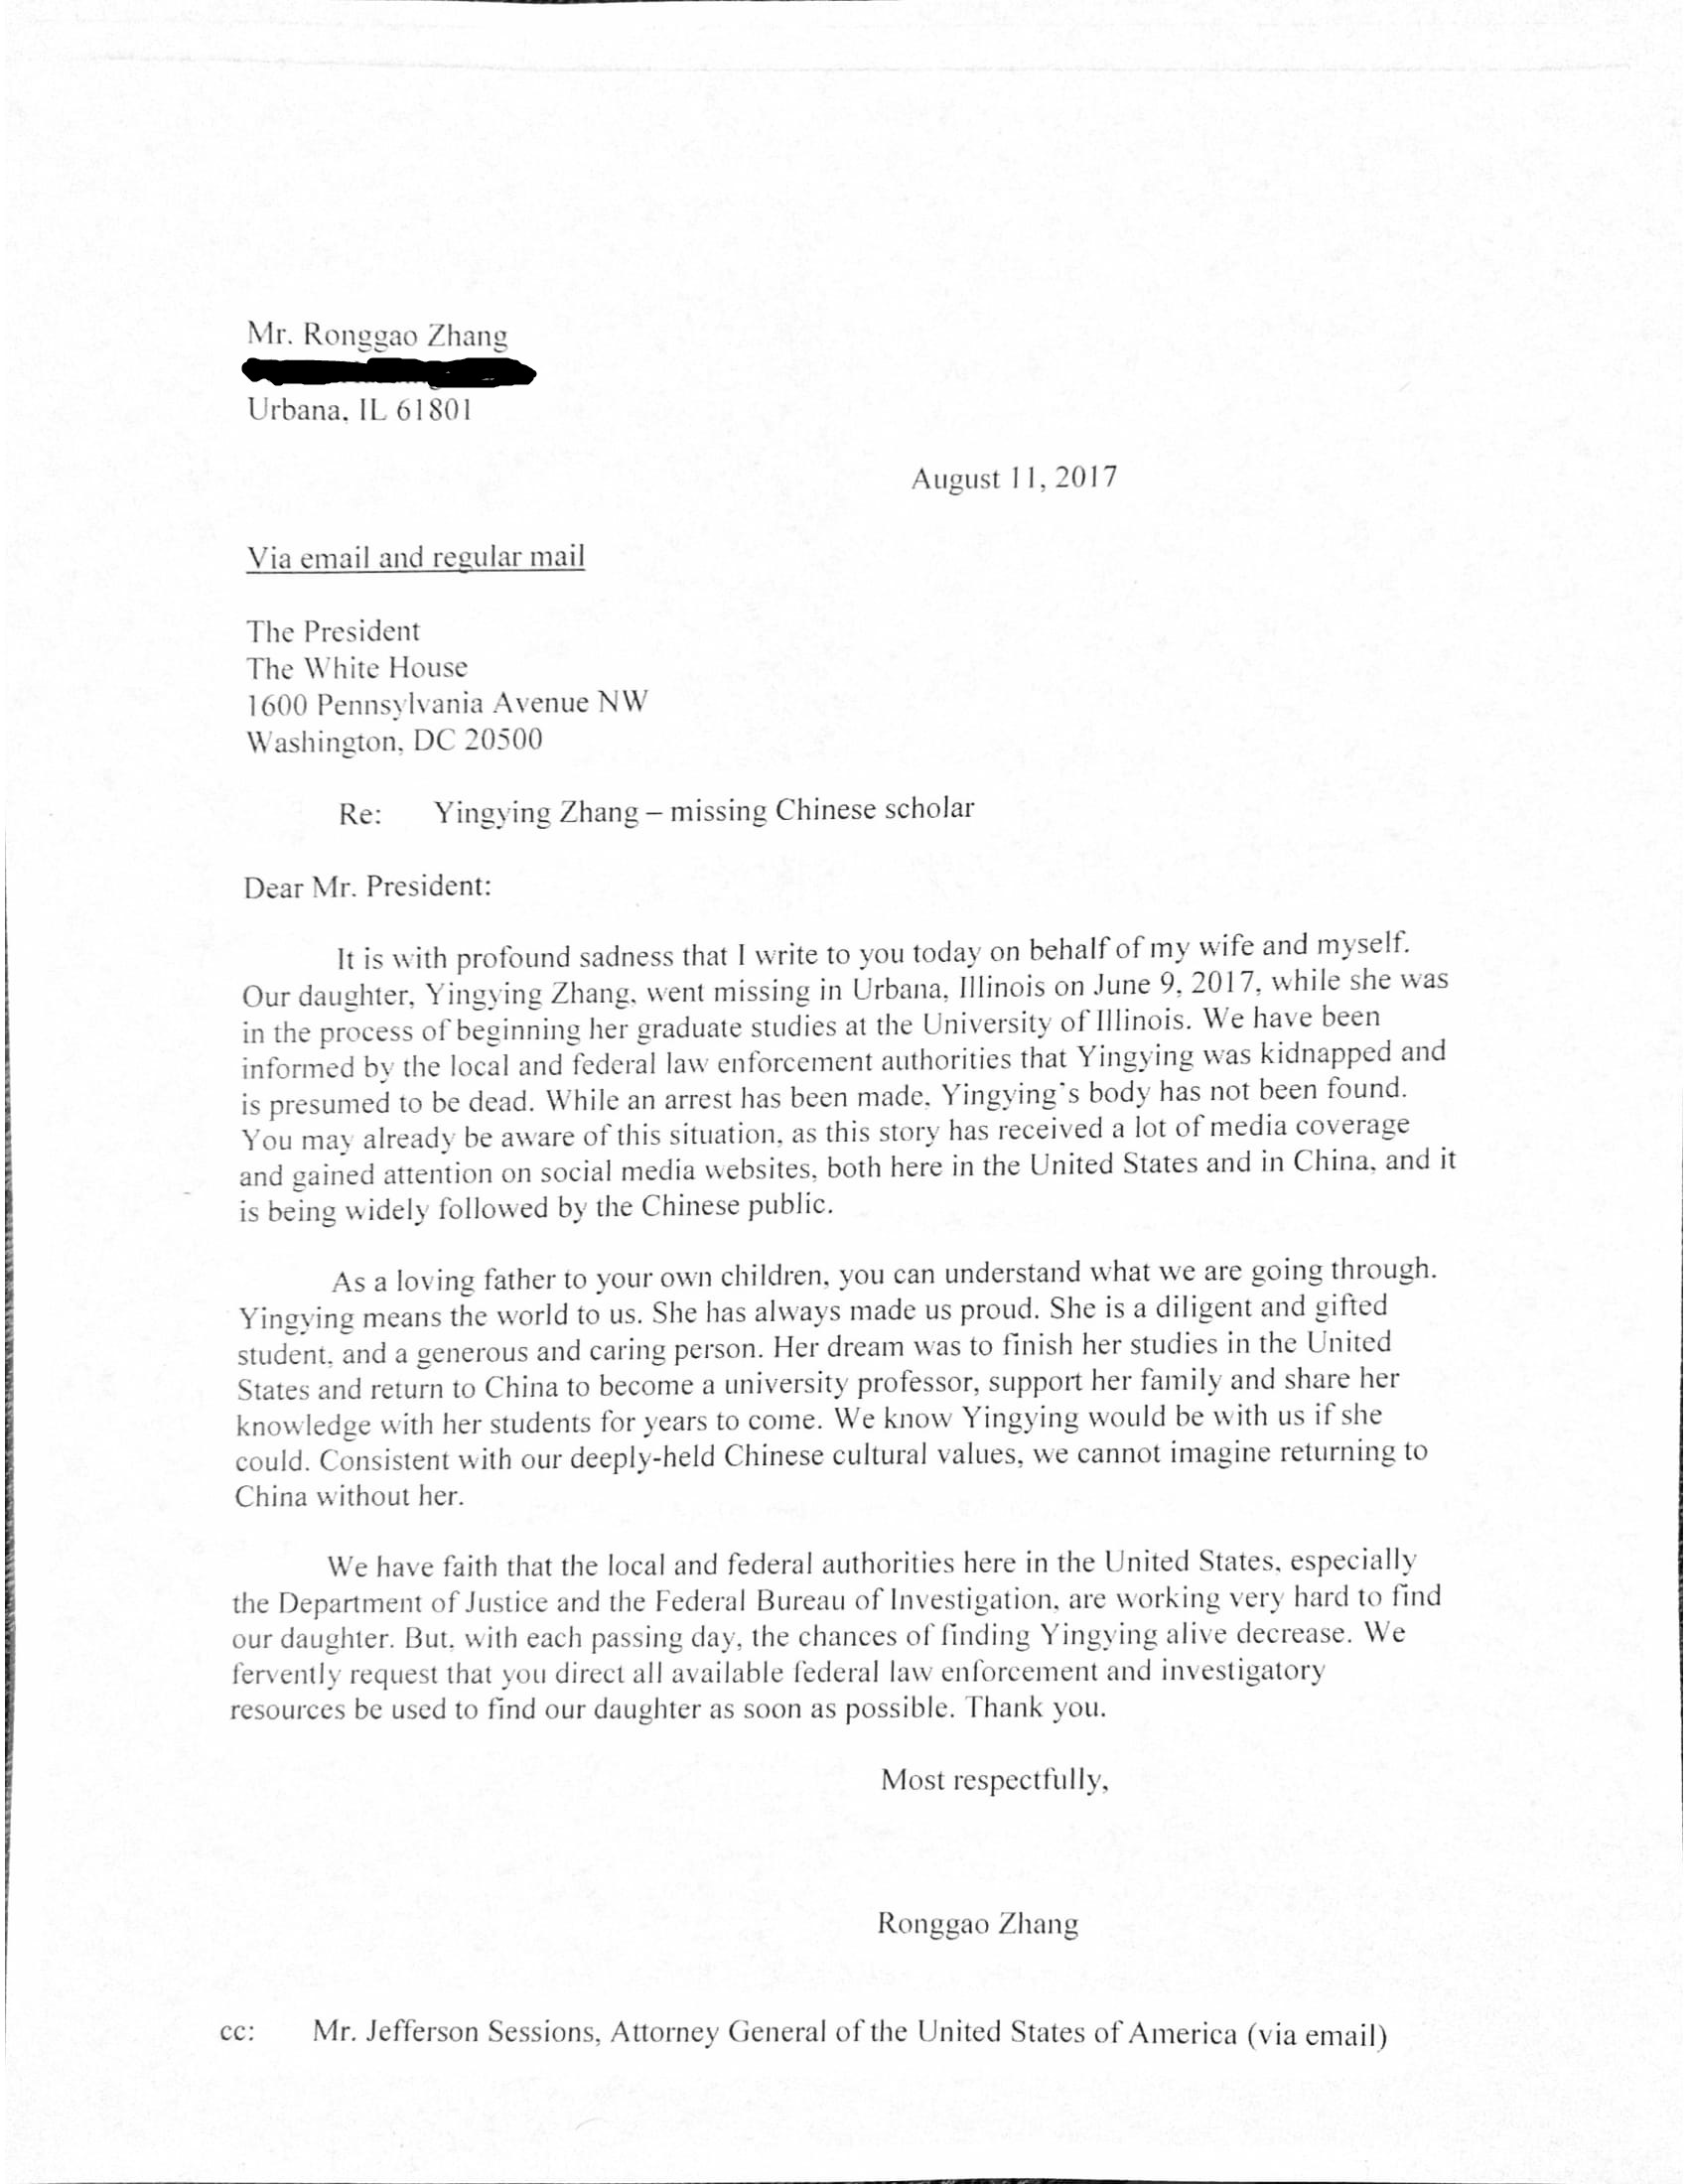 章瑩穎家人提交給川普總統的請願信，圖為信件英文。（章瑩穎家人新聞發布會現場提供）